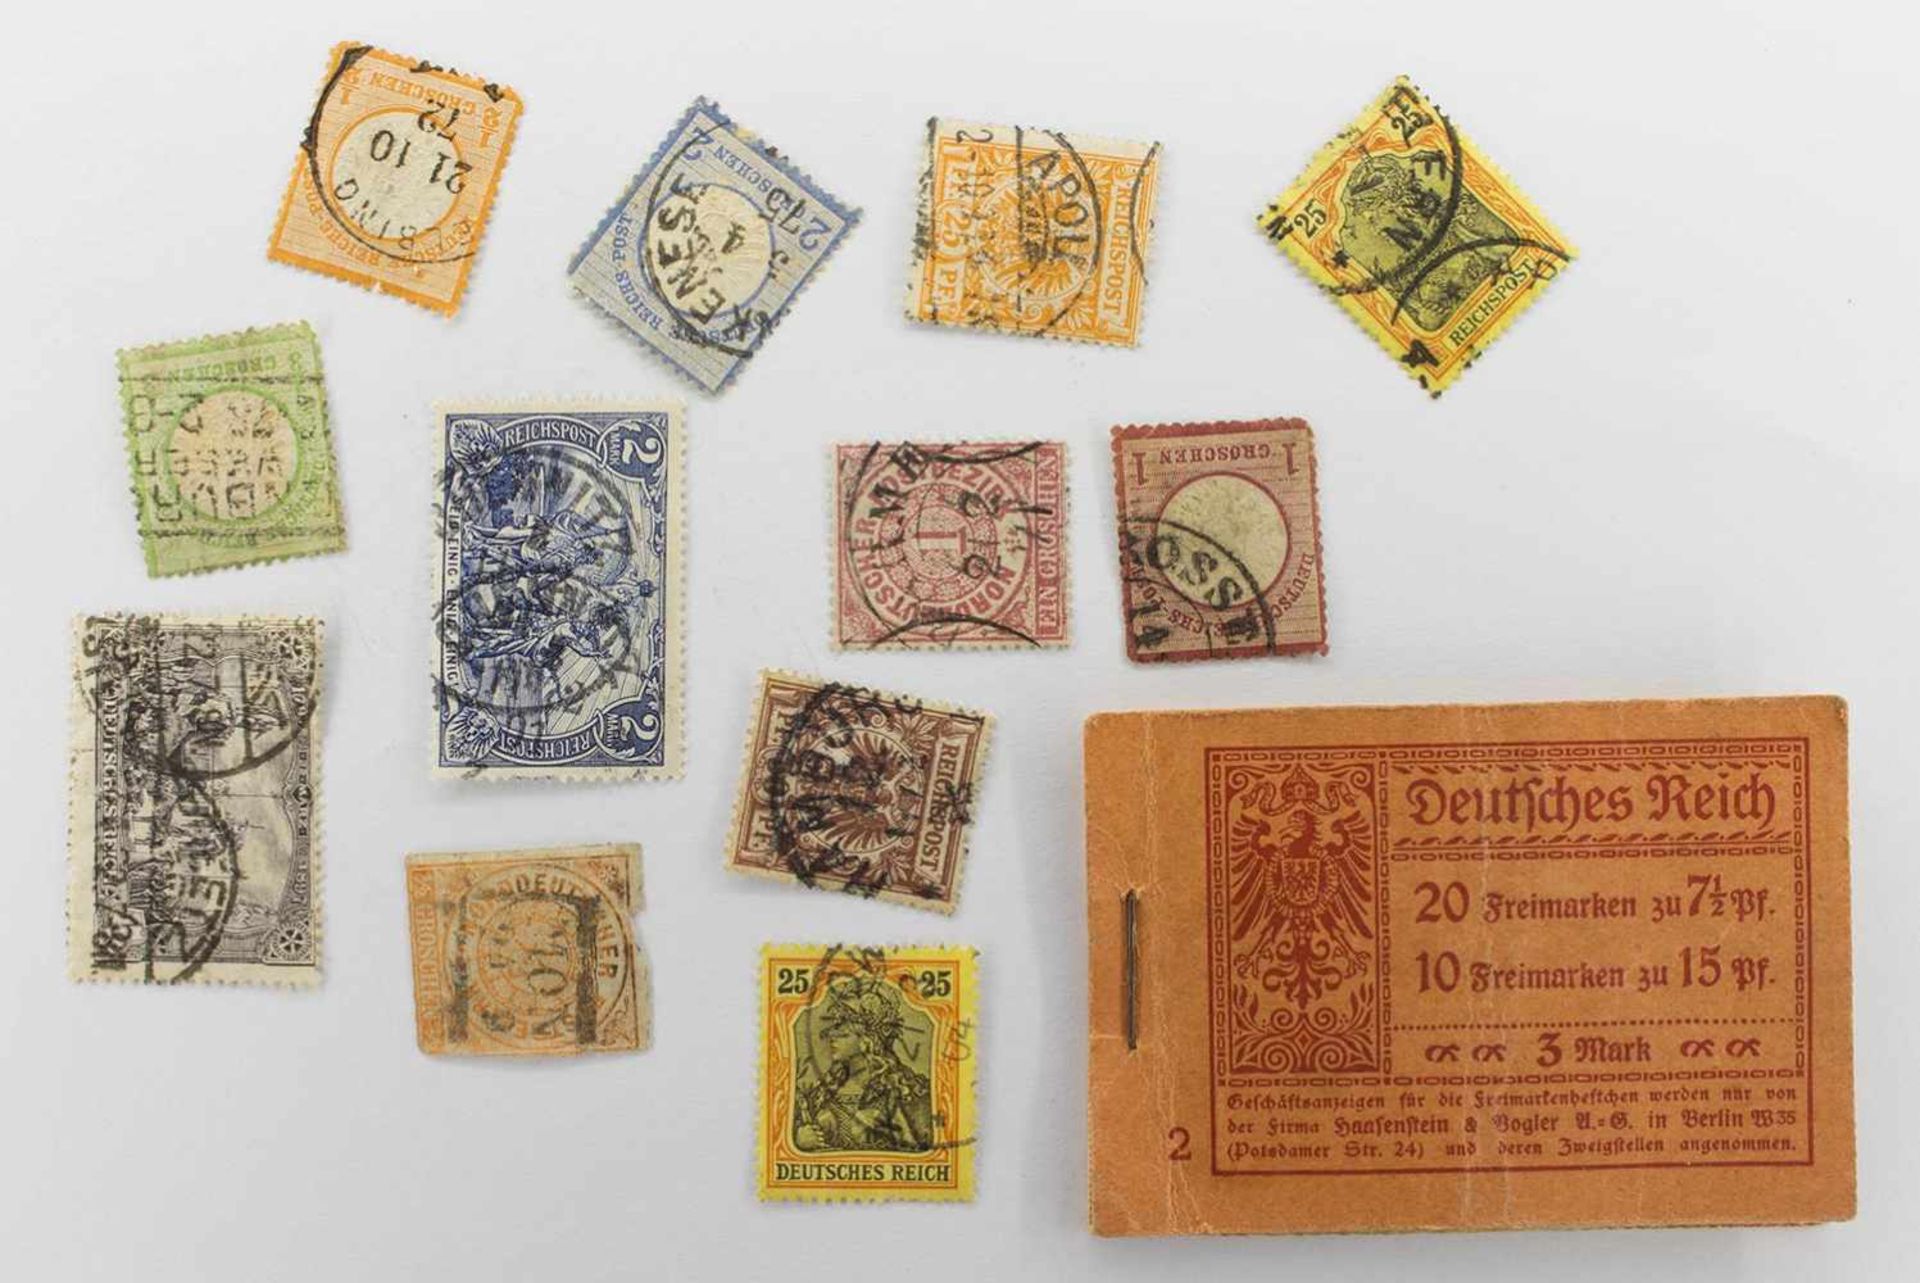 Lot Briefmarken12 x Deutsches Reich, gestempelt u. postfrisch, 1 Markenheft (nicht vollständig)